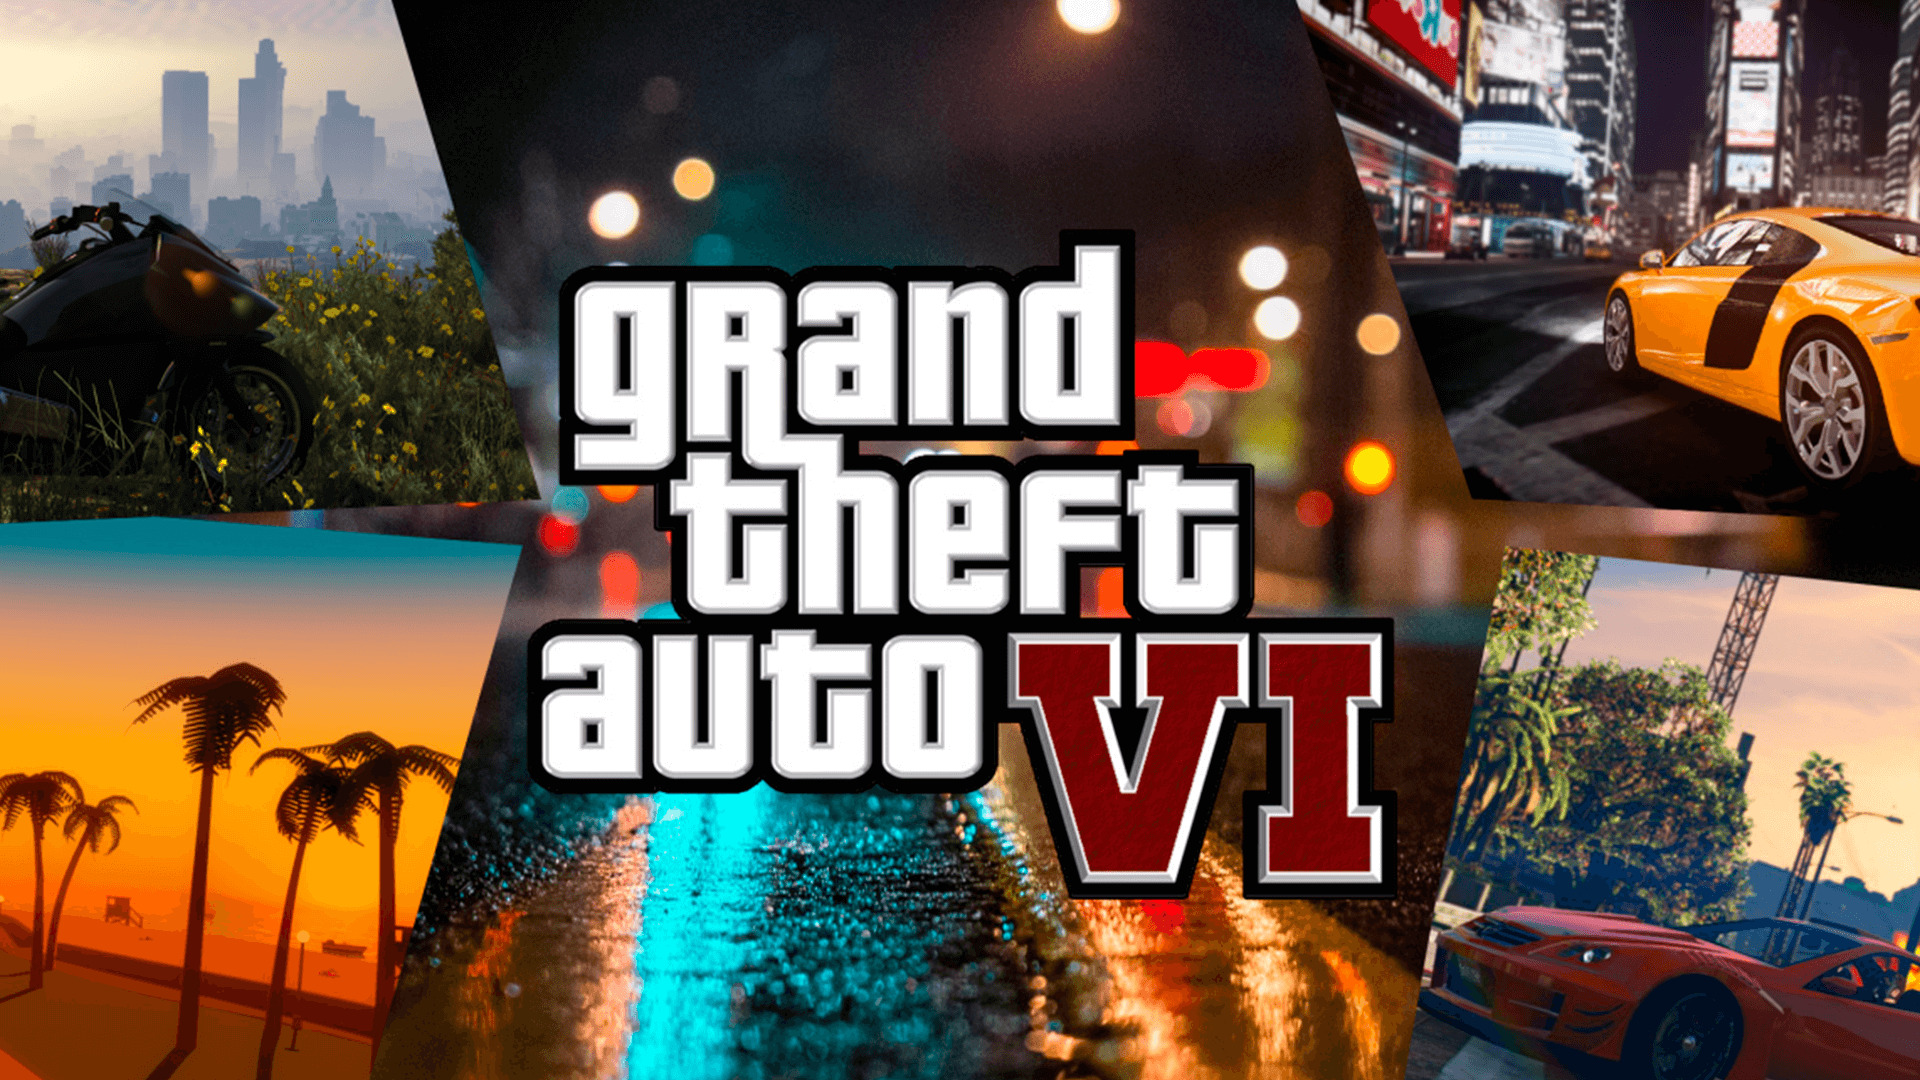 GTA 6 | Vice City poderá ser a cidade do novo título da Rockstar Games 2022 Viciados